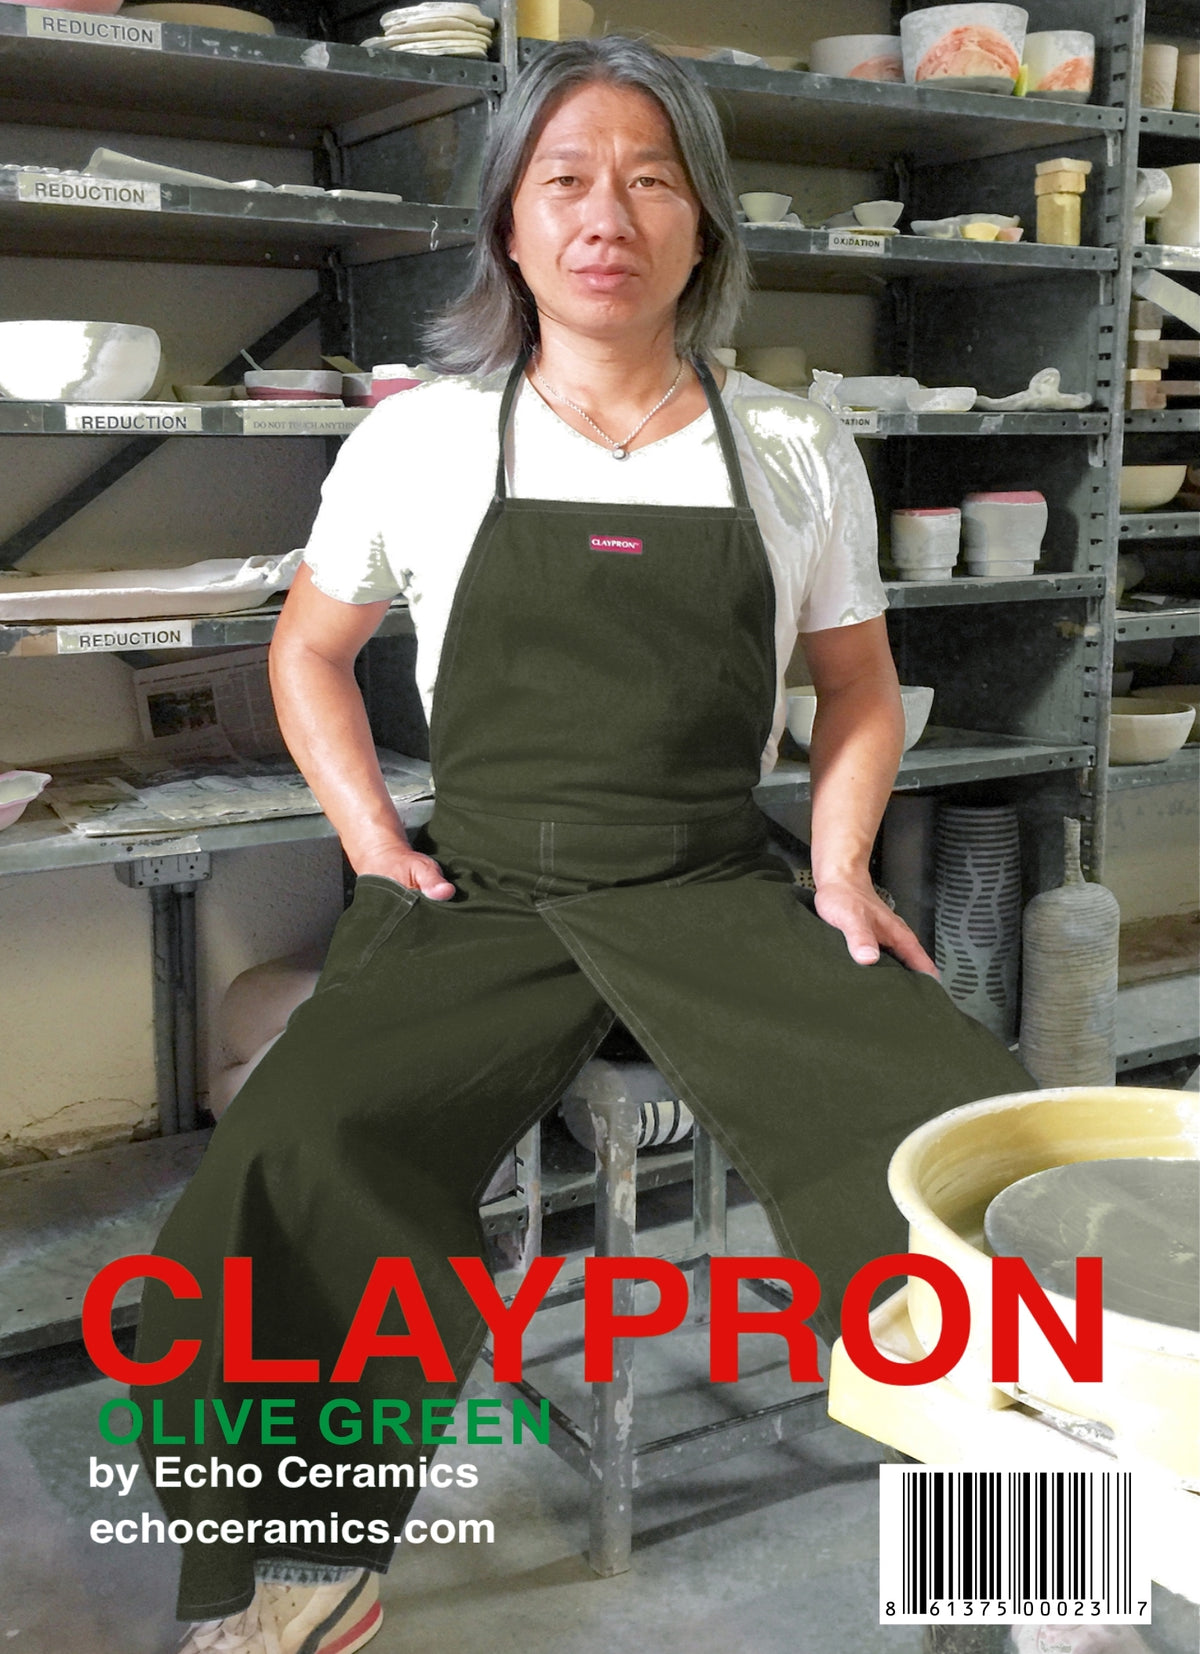 Clay Apron, Claypron by Echo Ceramics